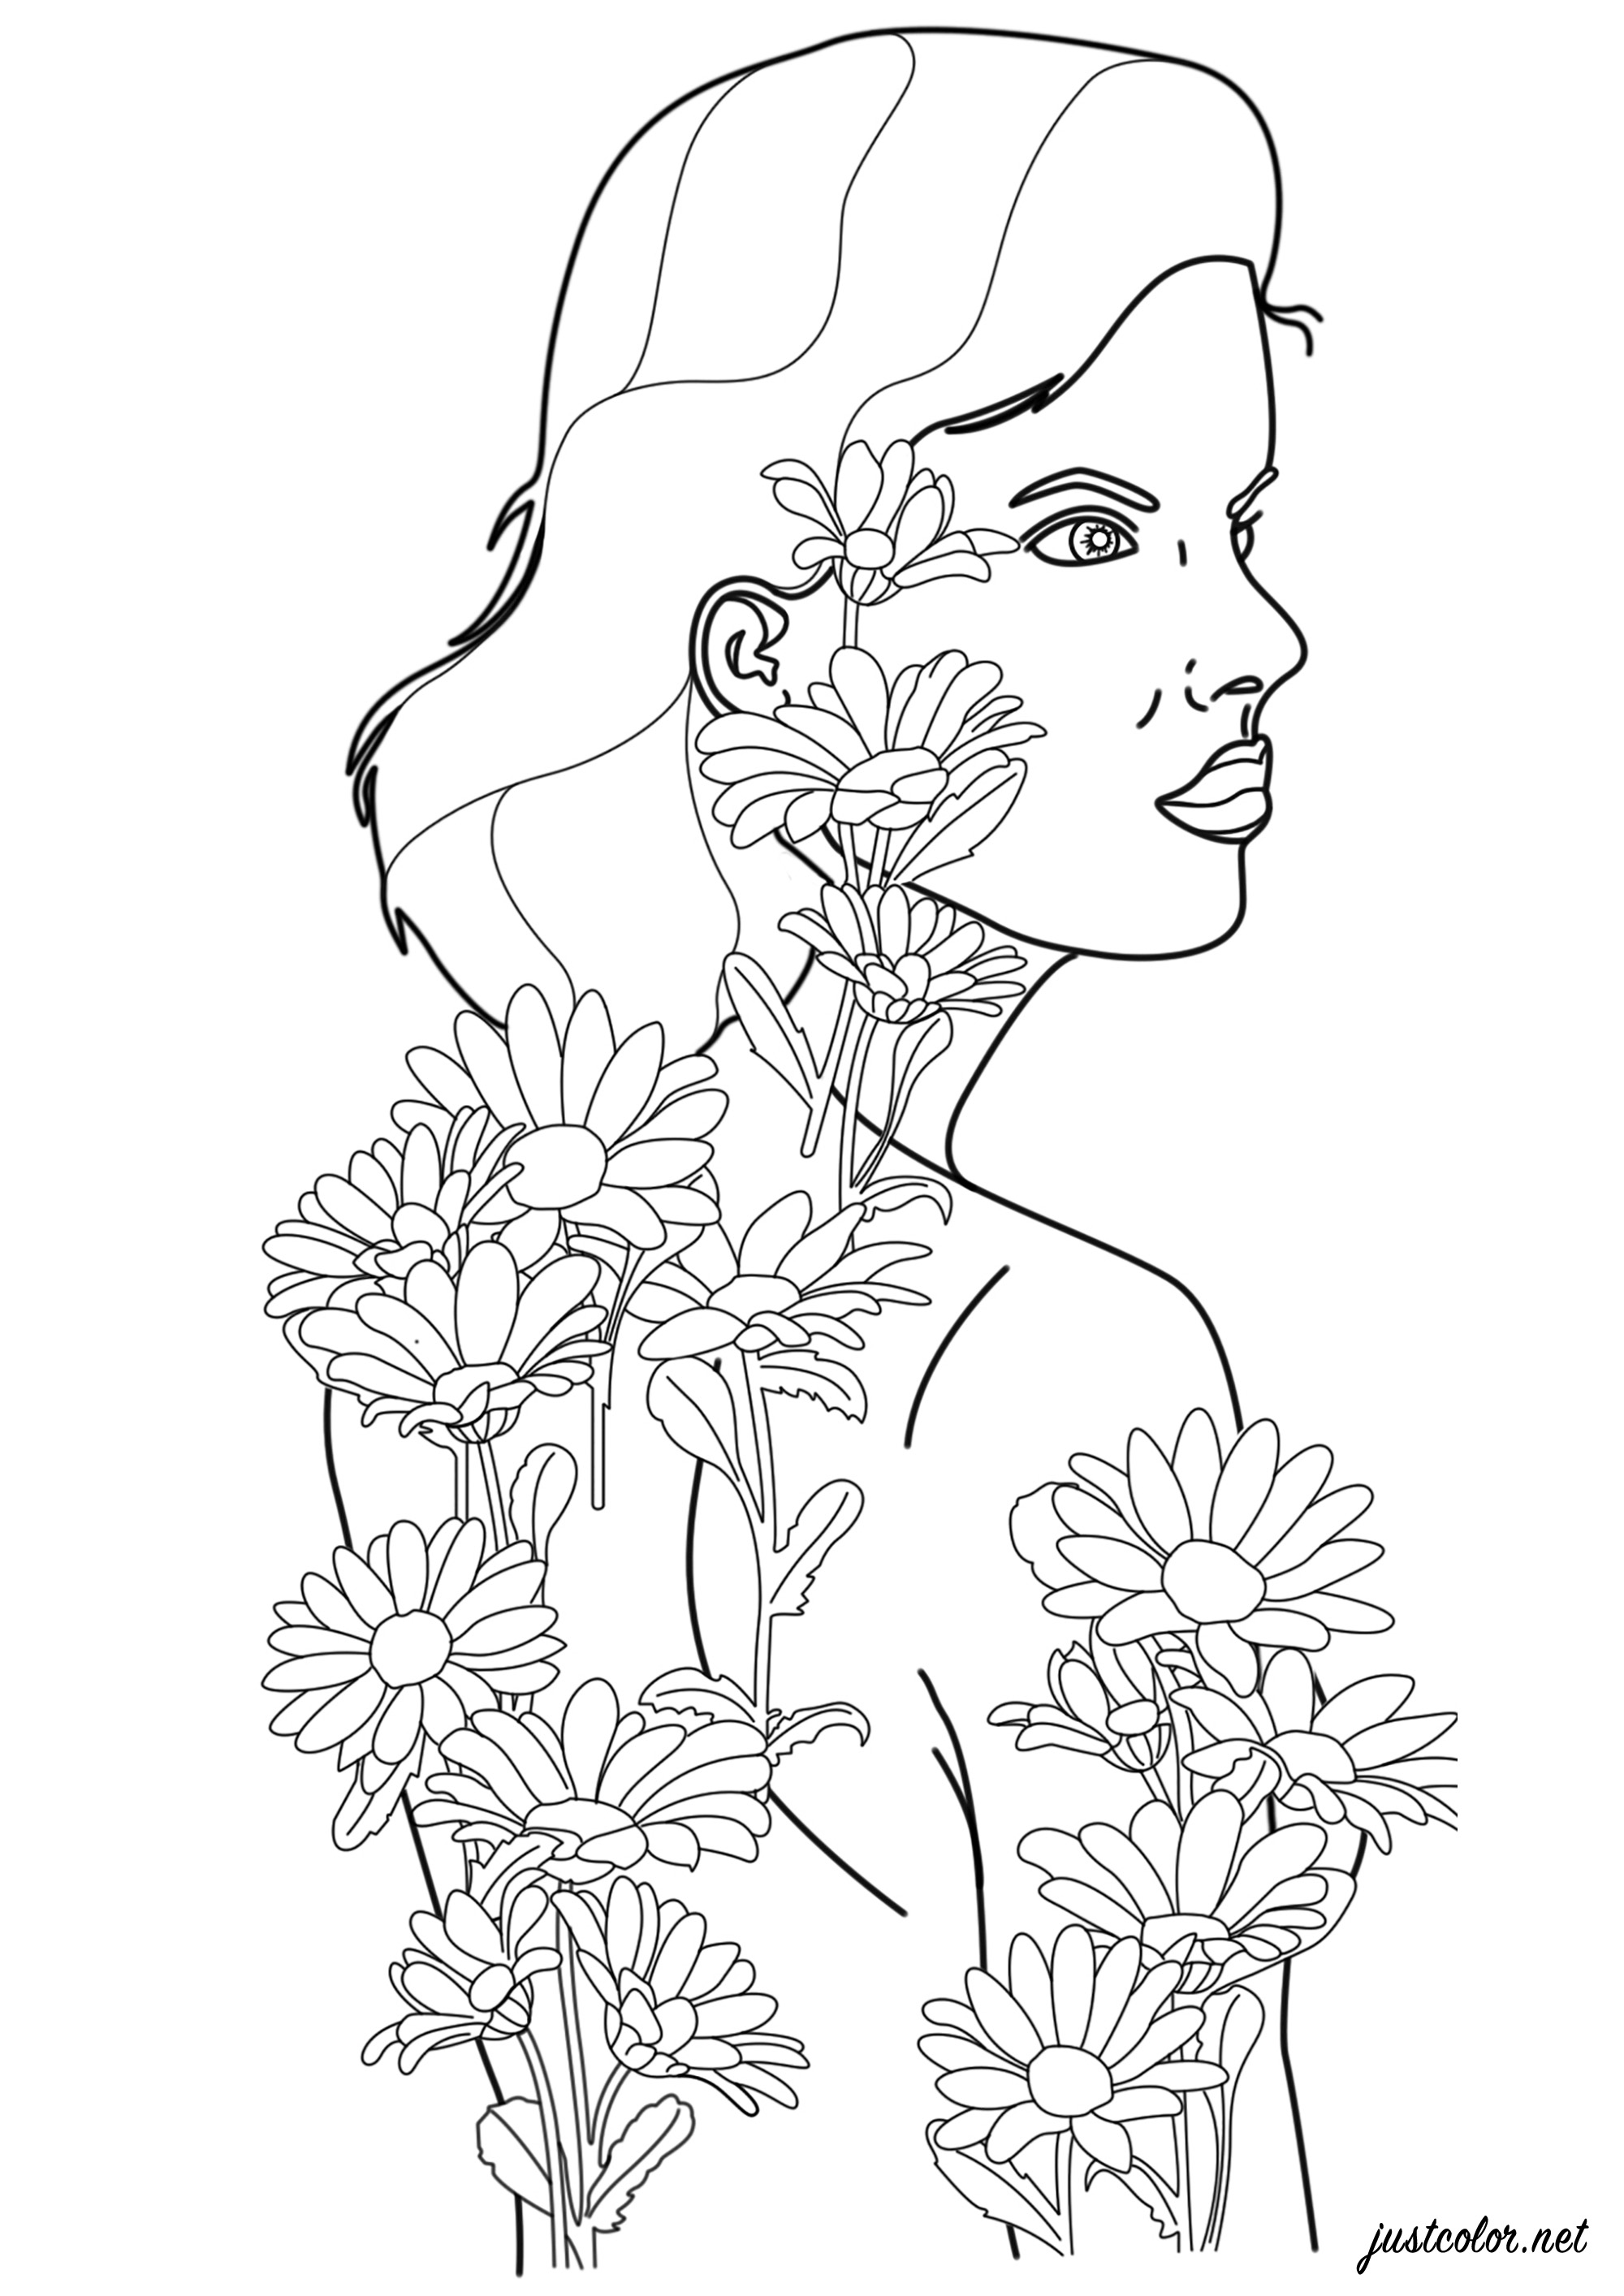 Femme avec tatouages de fleurs prenant vie et devenant réelles, Artiste : Warrick